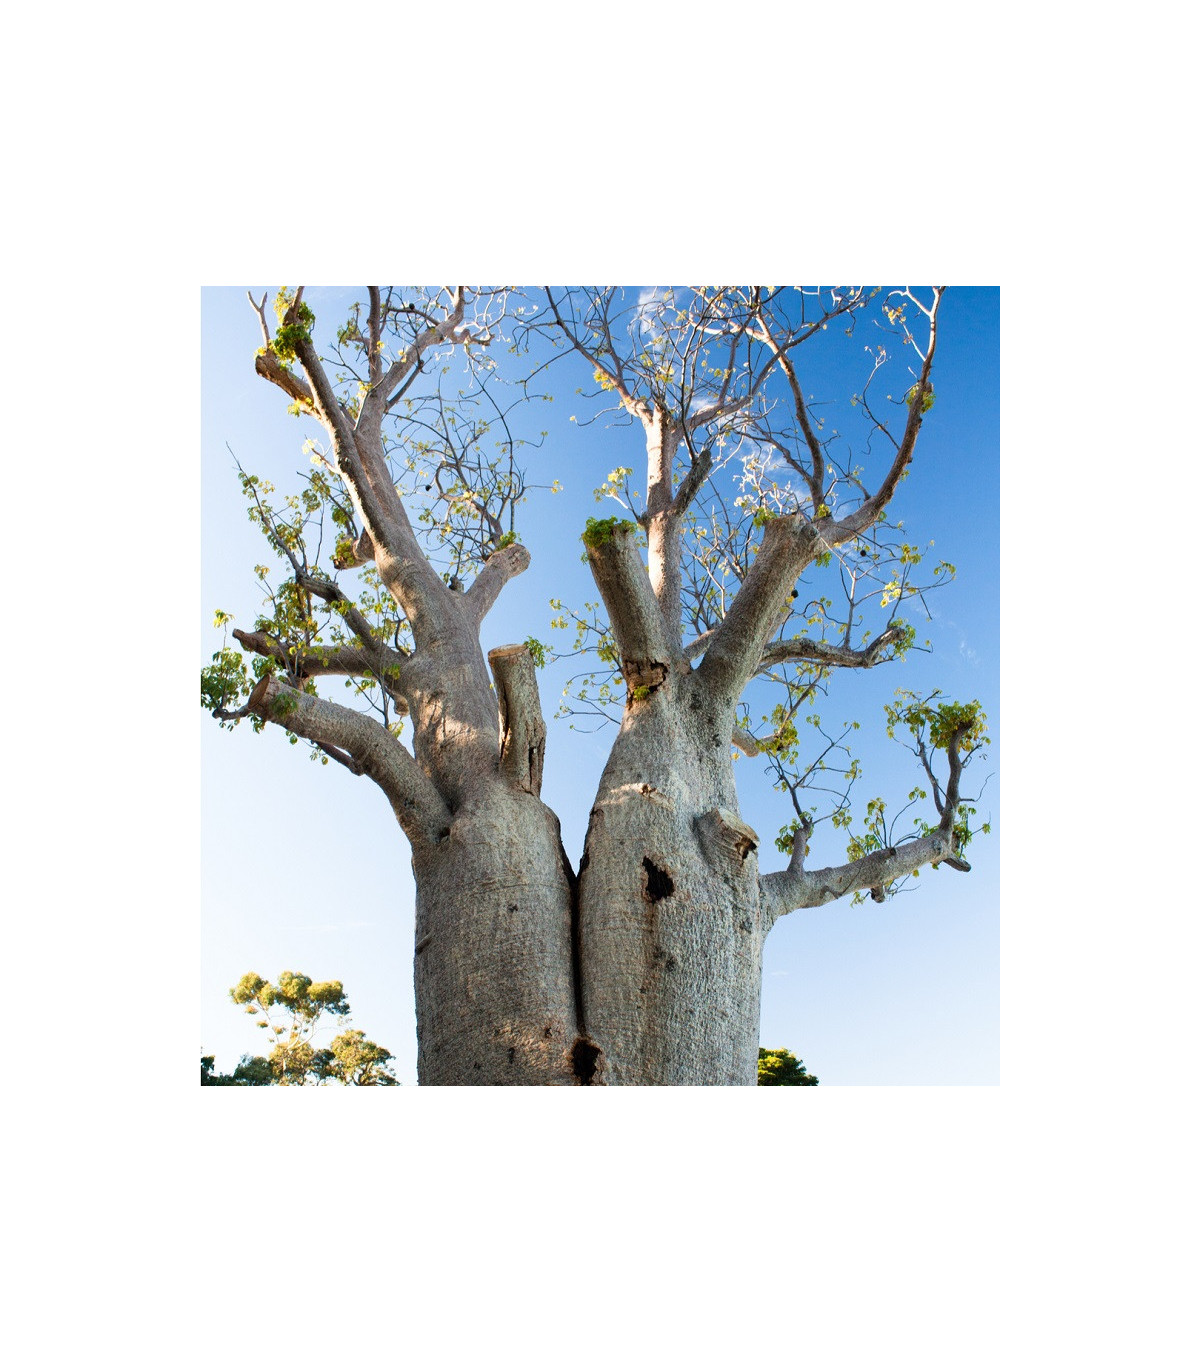 Baobab Fony - Fľaškový strom - semená baobabu - 2 ks - Adansonia fony